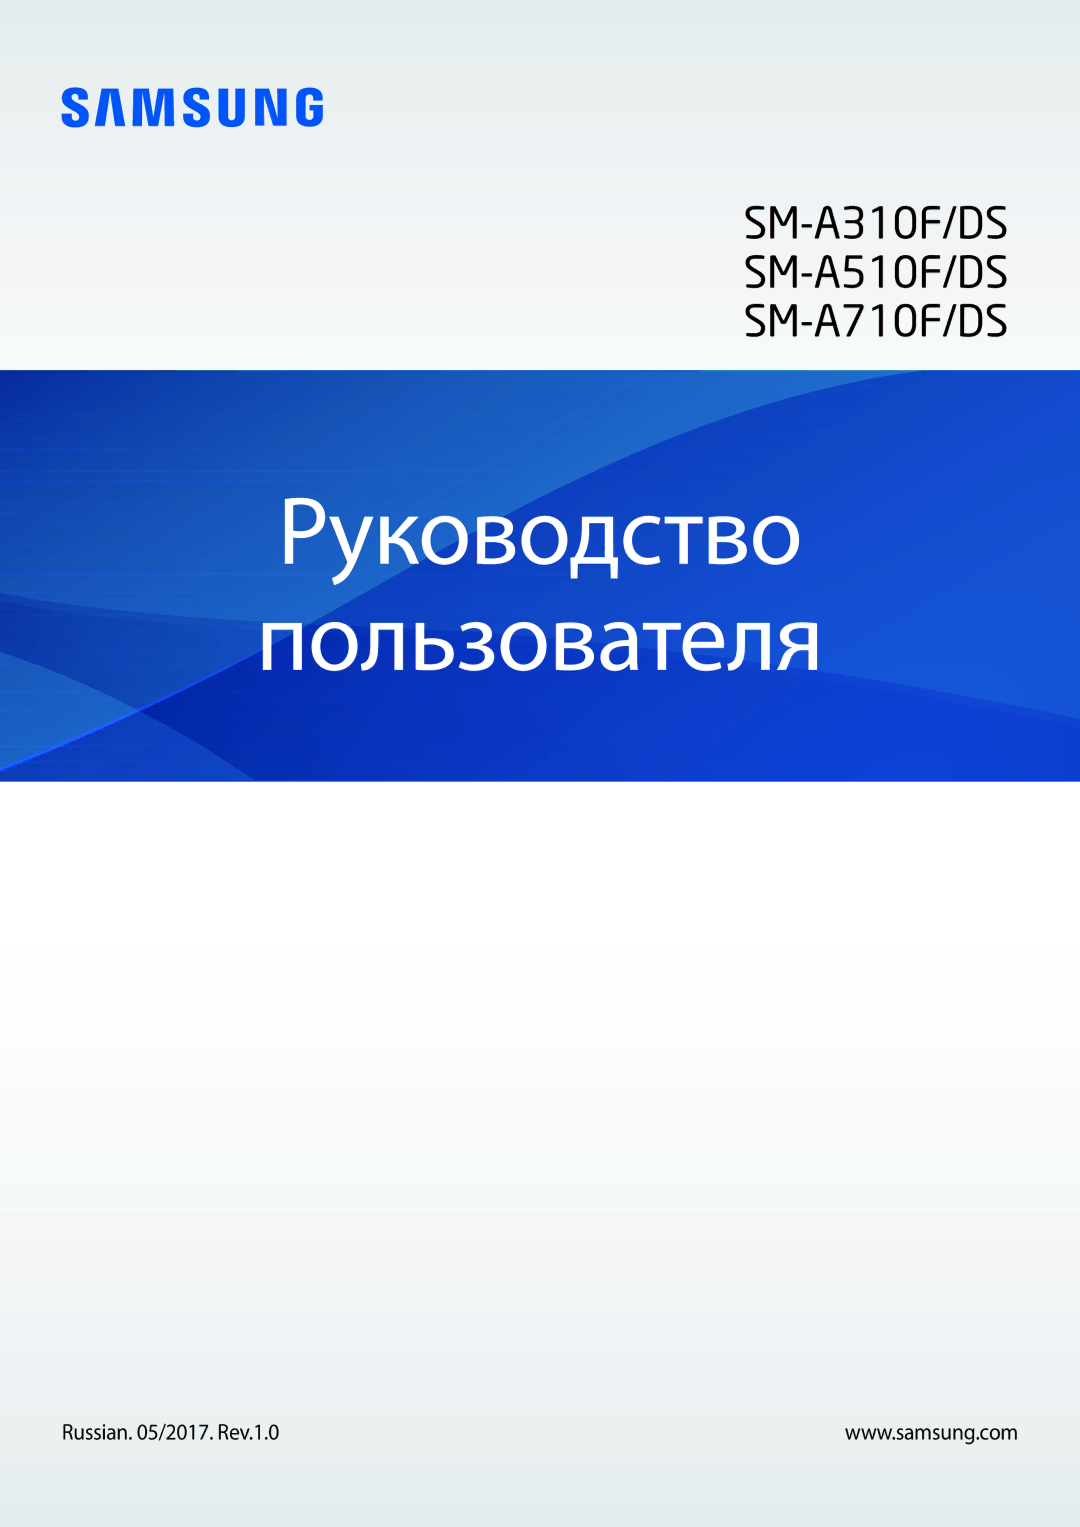 Samsung SM-A310FZWDSER, SM-A310FZKDSER, SM-A310FEDDSER manual Руководство Пользователя, Russian /2017. Rev.1.0 